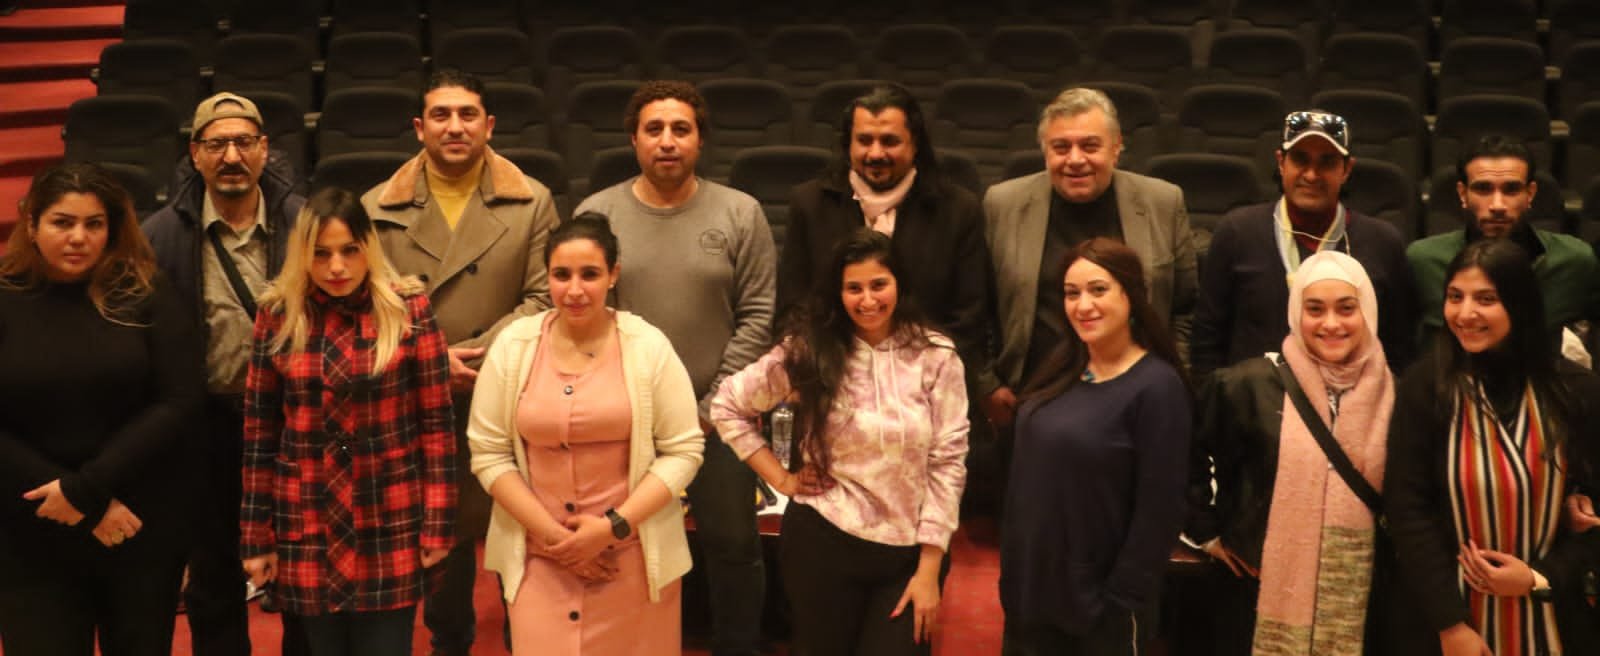 ناصر عبد الحفيظ: اليوم انطلاق أولى عروض مسرحية "متجوزين واللا...؟" على مسرح صاحبة الجلالة